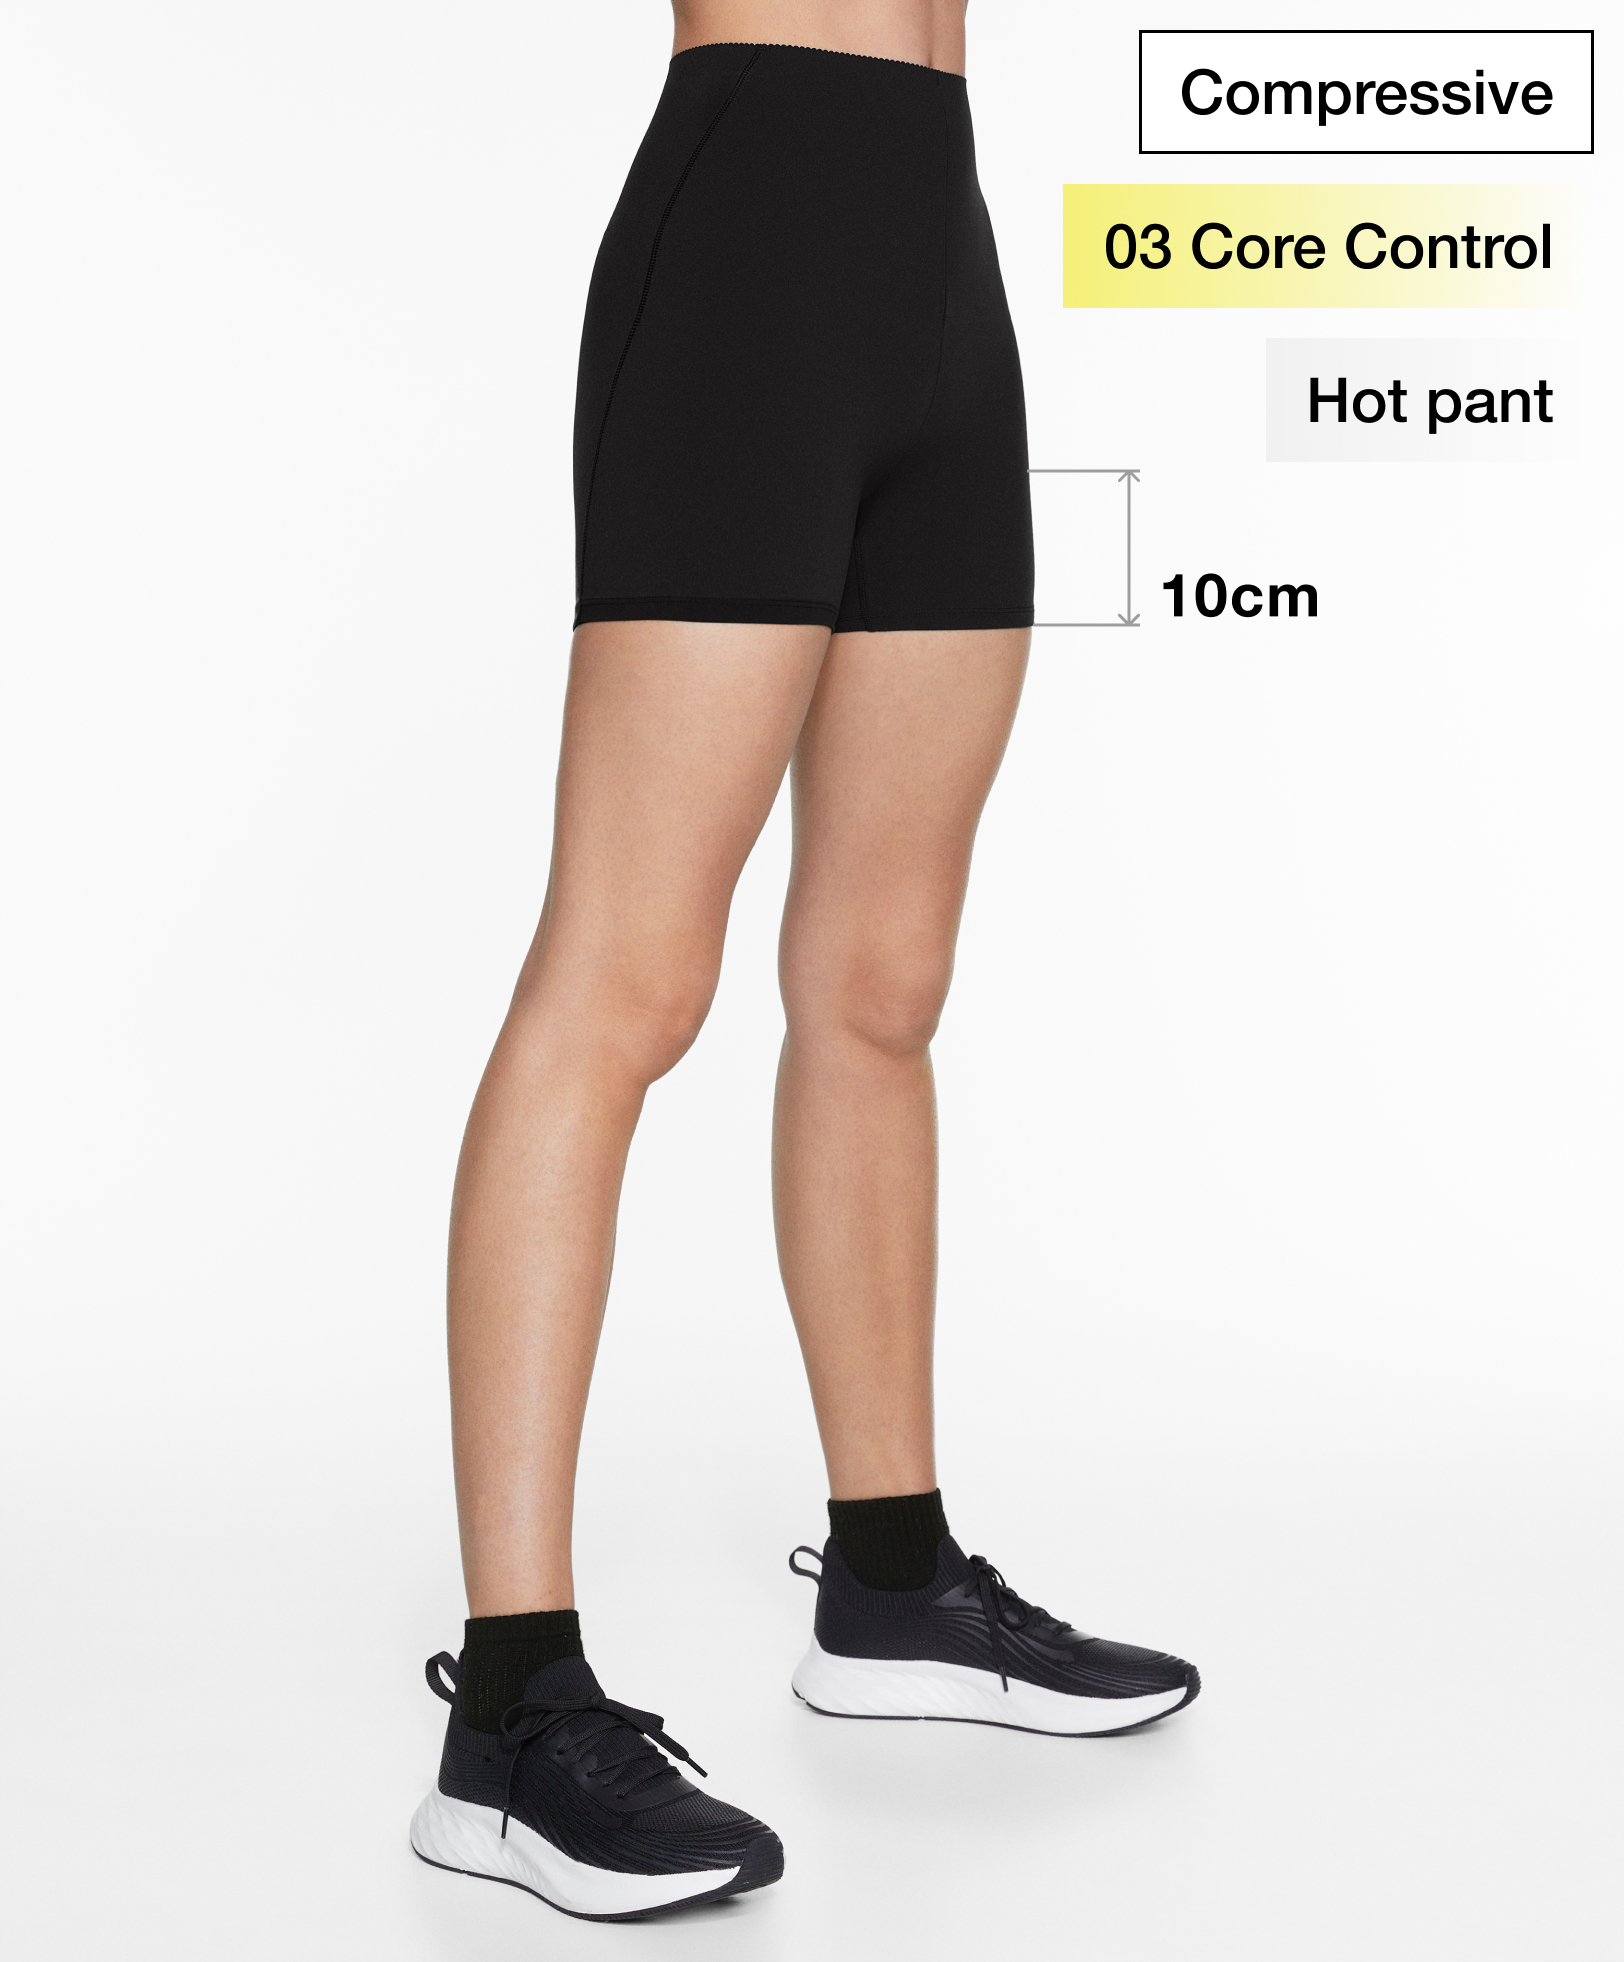 Compressive core control 10cm hot pants